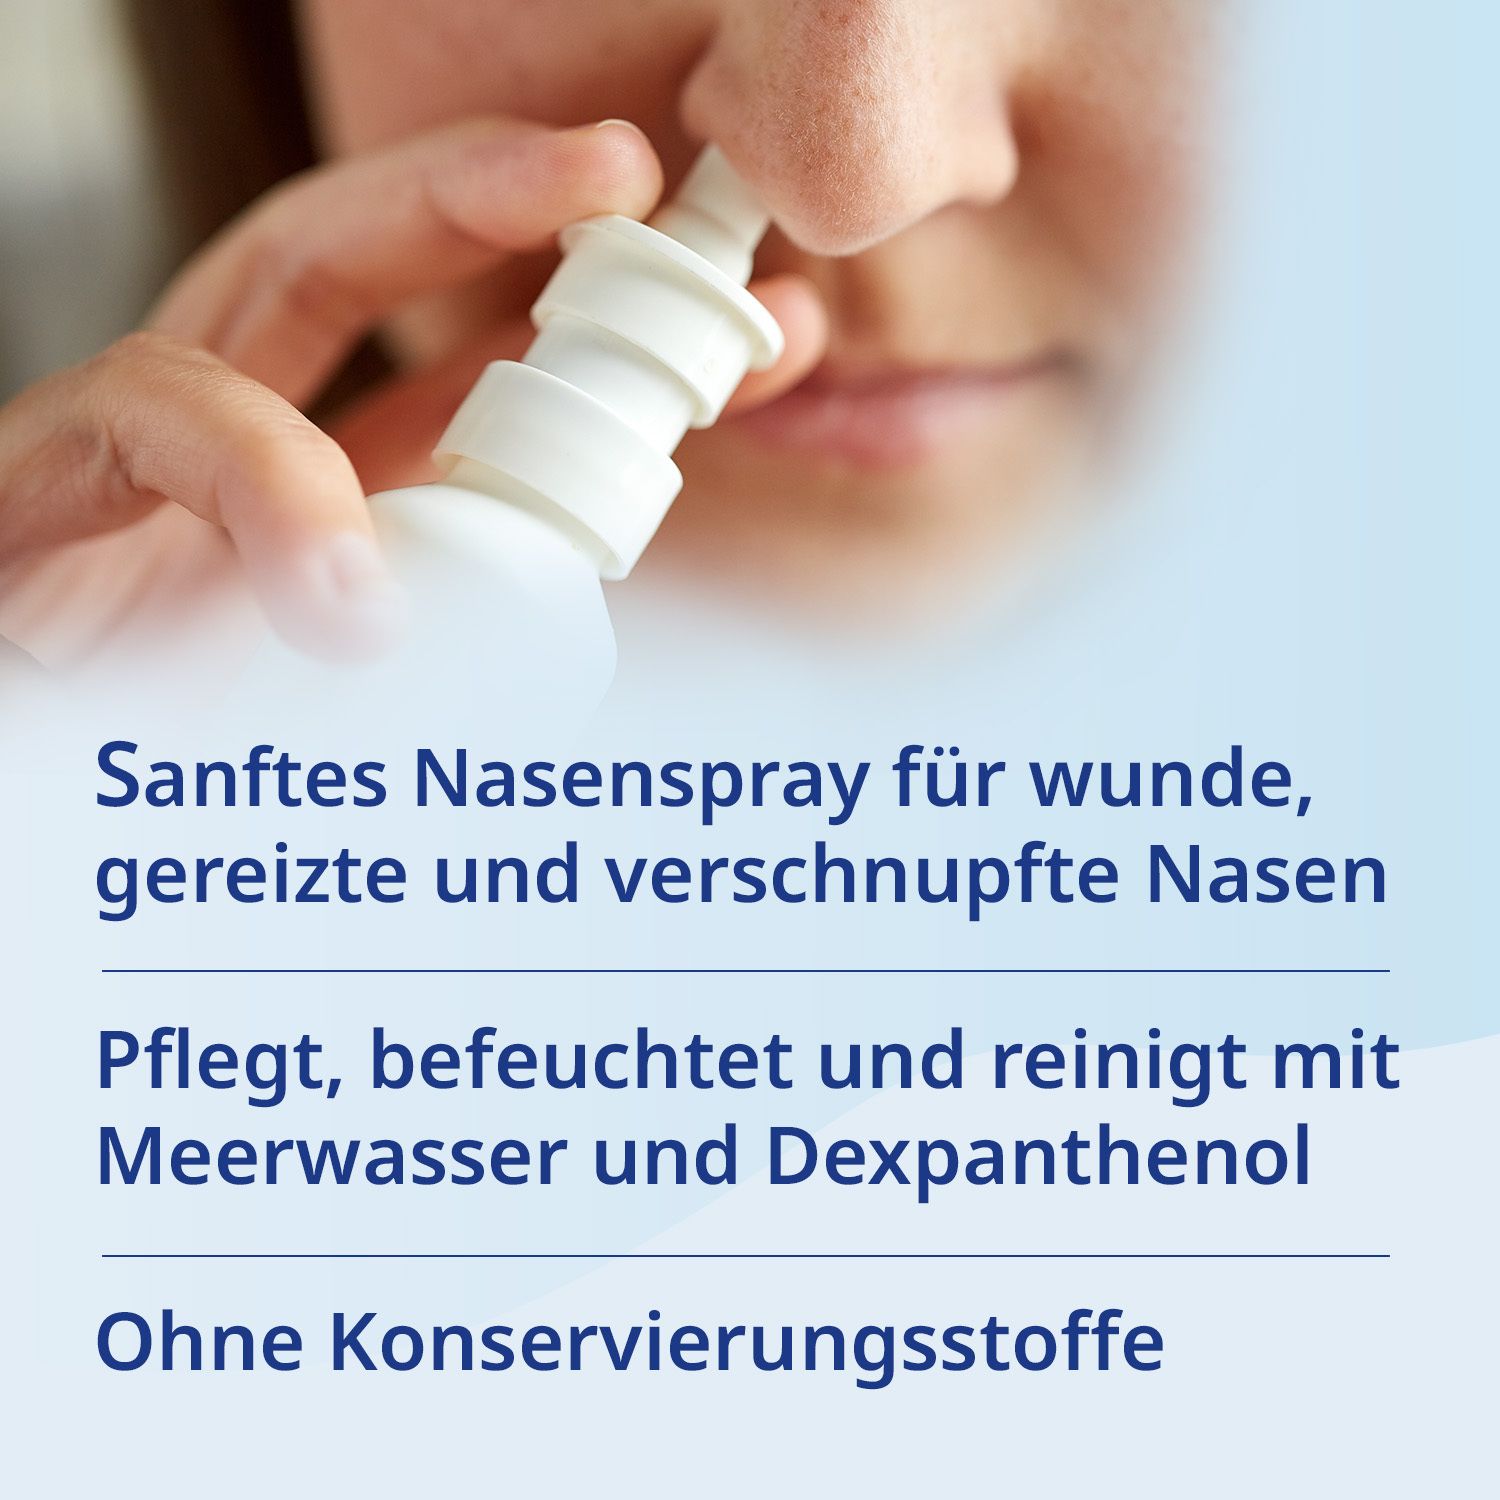 MAR® Nasenspray plus Pflege Nasenspray mit Meerwasser und Dexpanthenol